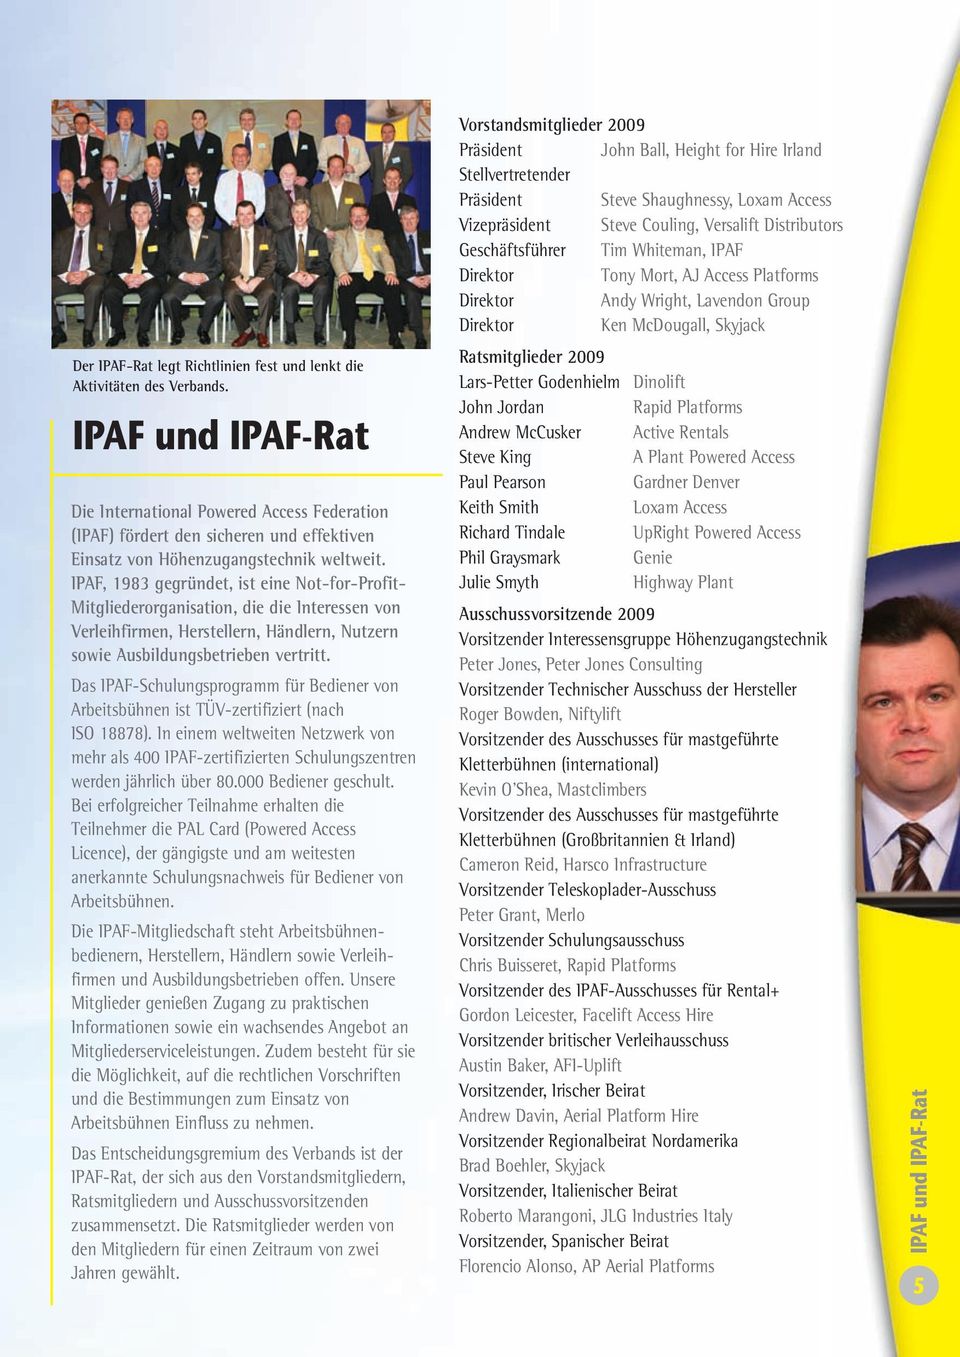 IPAF, 1983 gegründet, ist eine Not-for-Profit- Mitgliederorganisation, die die Interessen von Verleihfirmen, Herstellern, Händlern, Nutzern sowie Ausbildungsbetrieben vertritt.